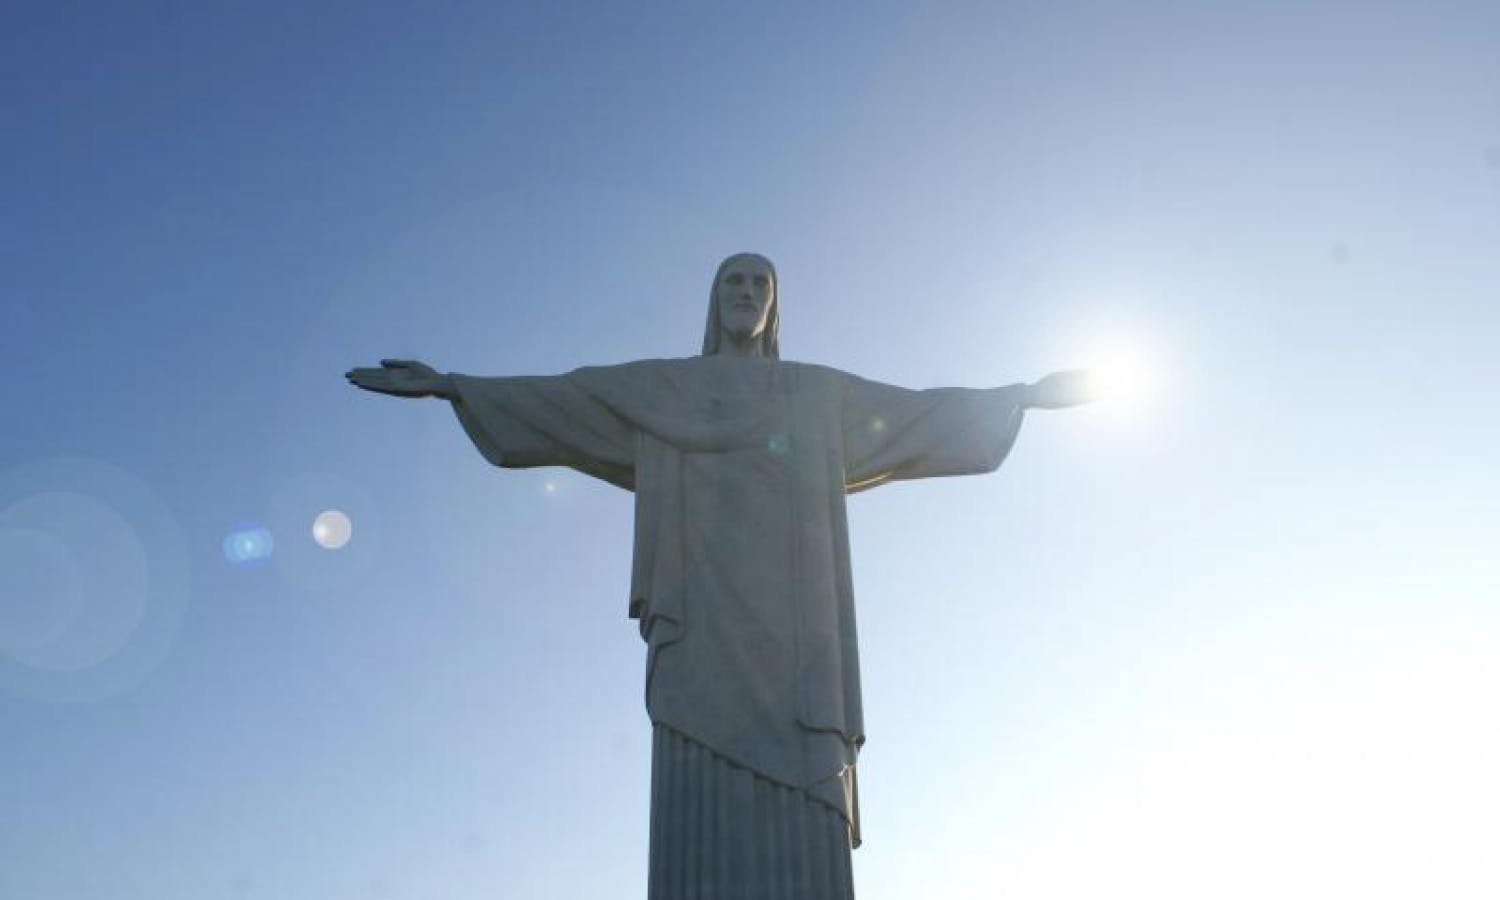 Visita do Corcovado com a estátua do Cristo Redentor